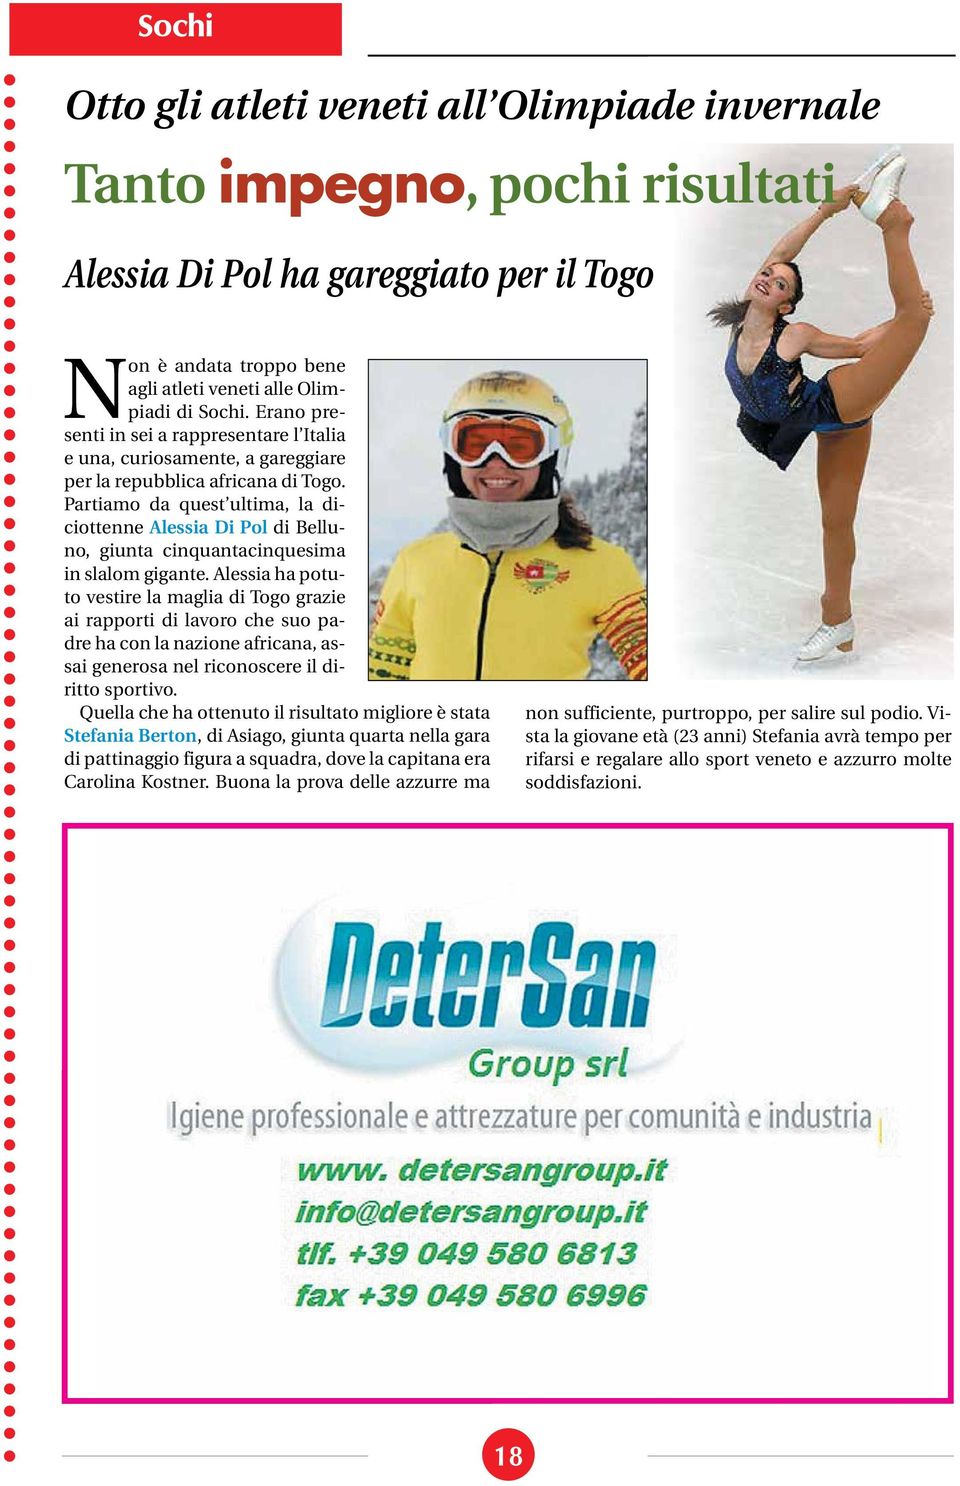 Partiamo da quest ultima, la diciottenne Alessia Di Pol di Belluno, giunta cinquantacinquesima in slalom gigante.